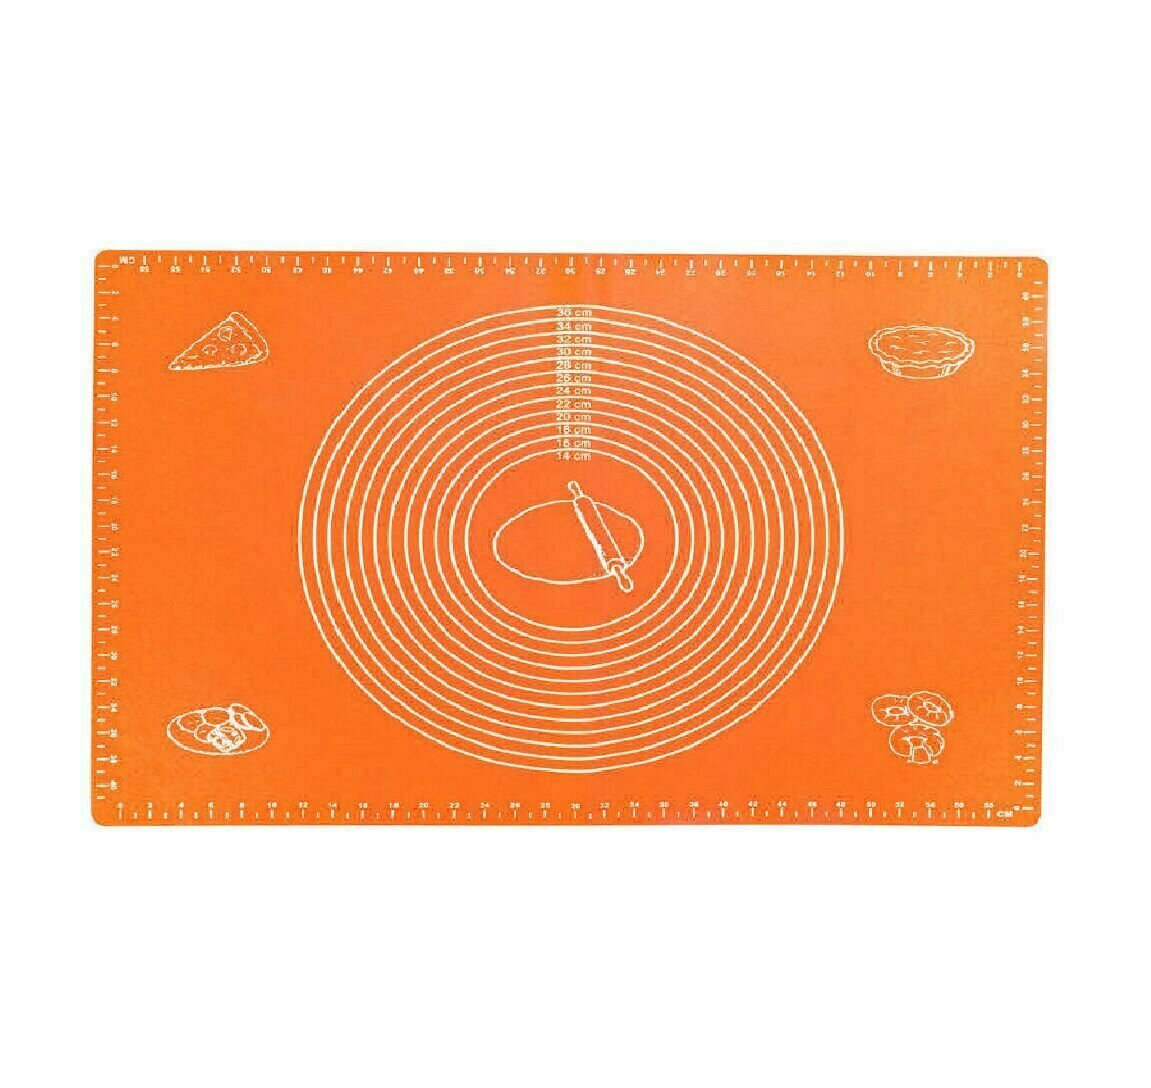 Силиконовый антипригарный коврик для выпечки и раскатки теста 45х65 см./ коврик с разметкой, оранжевый